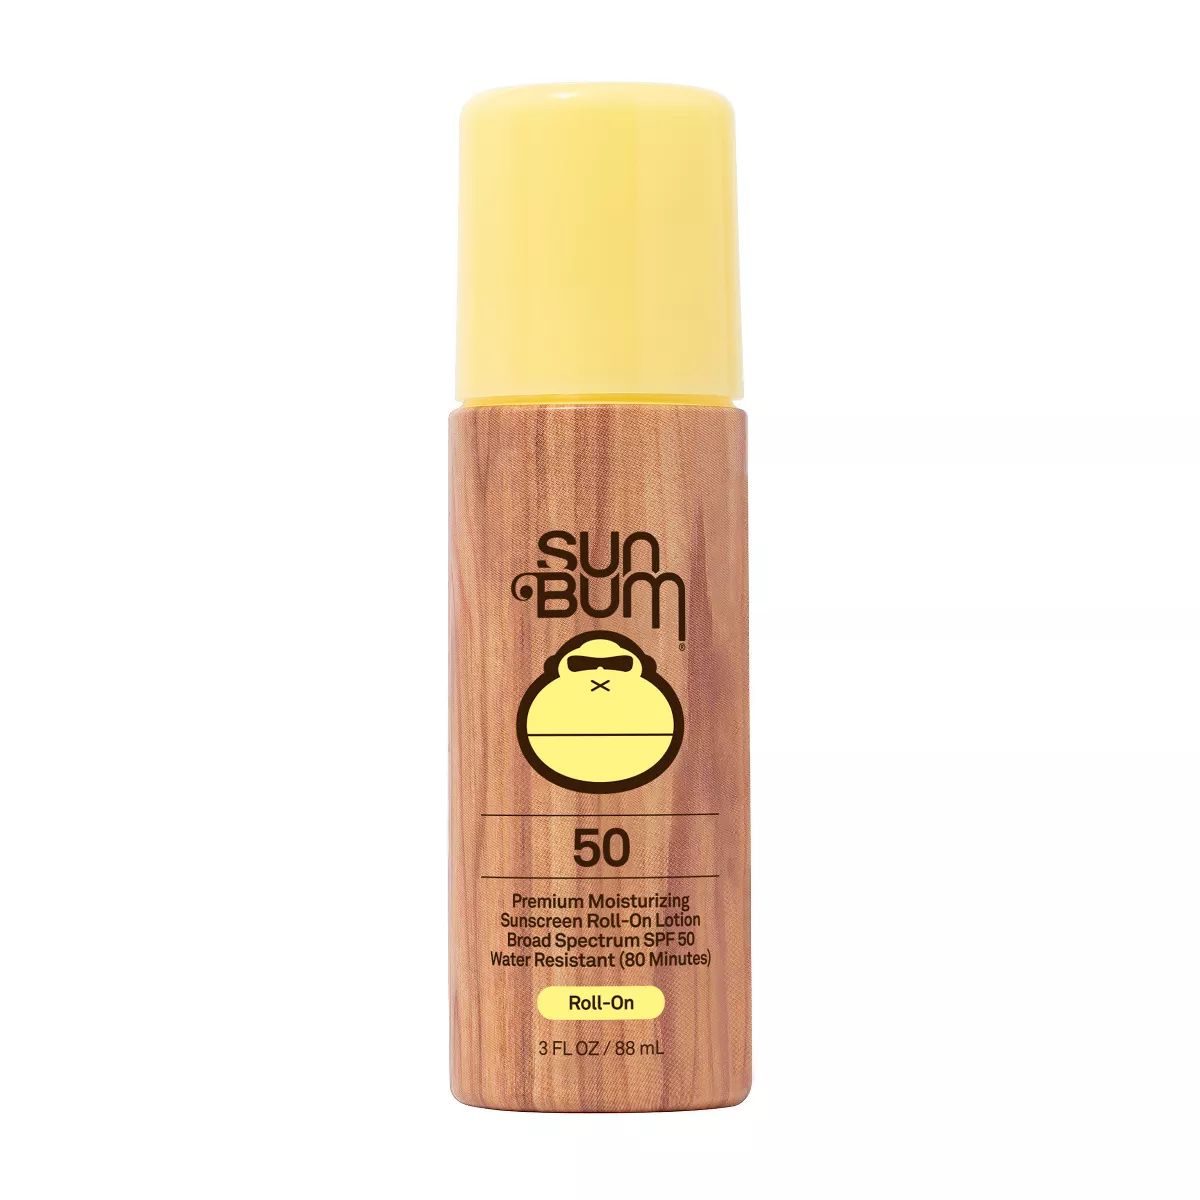 Sun Bum Sunscreen Roll-On - SPF 50 - 3 fl oz | Target